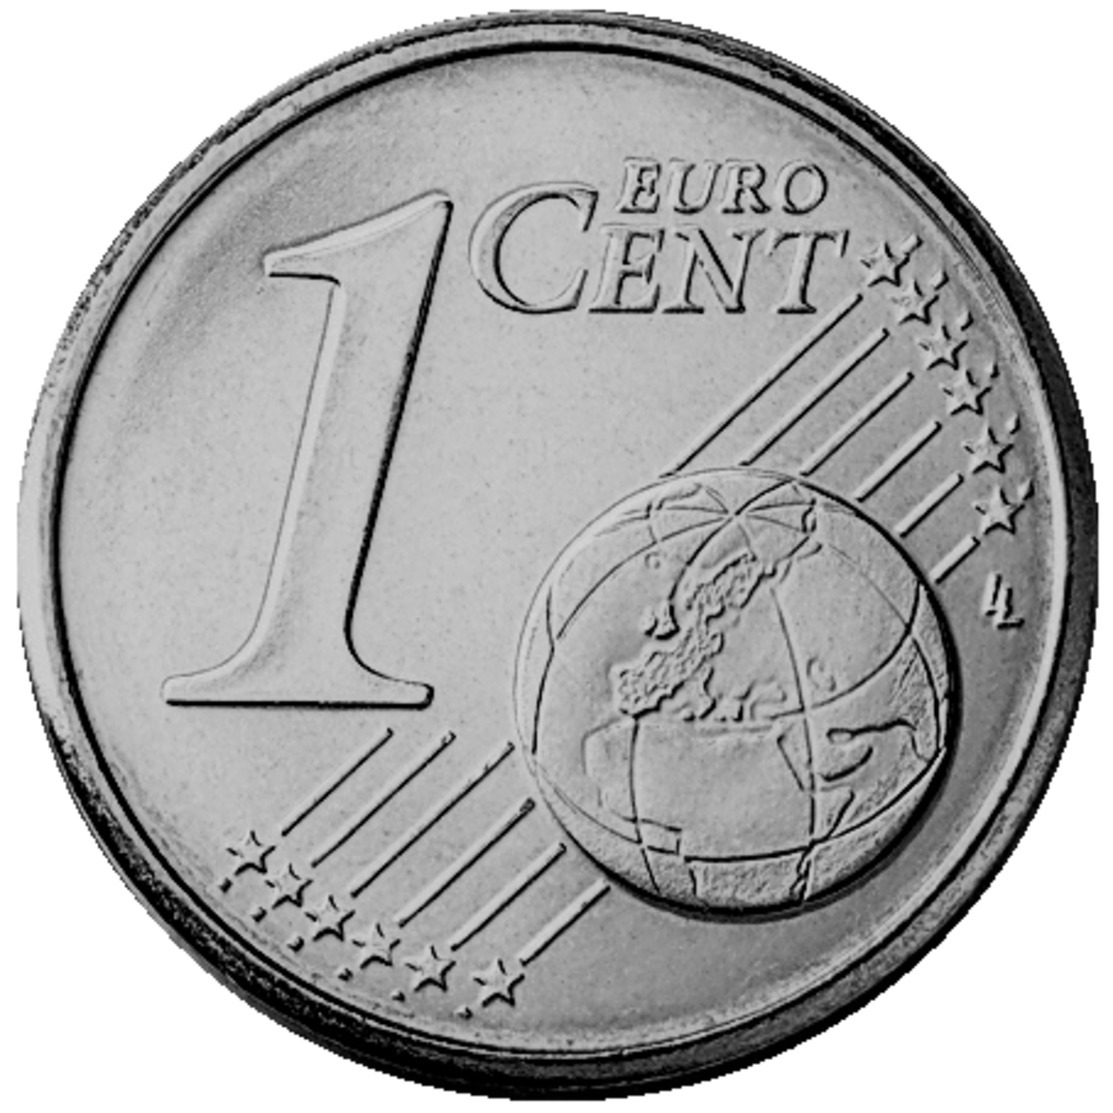 MONNAIE FRANCE 1 Cent 1999 Euro Fautée Non Cuivrée Etat Superbe - Errors And Oddities